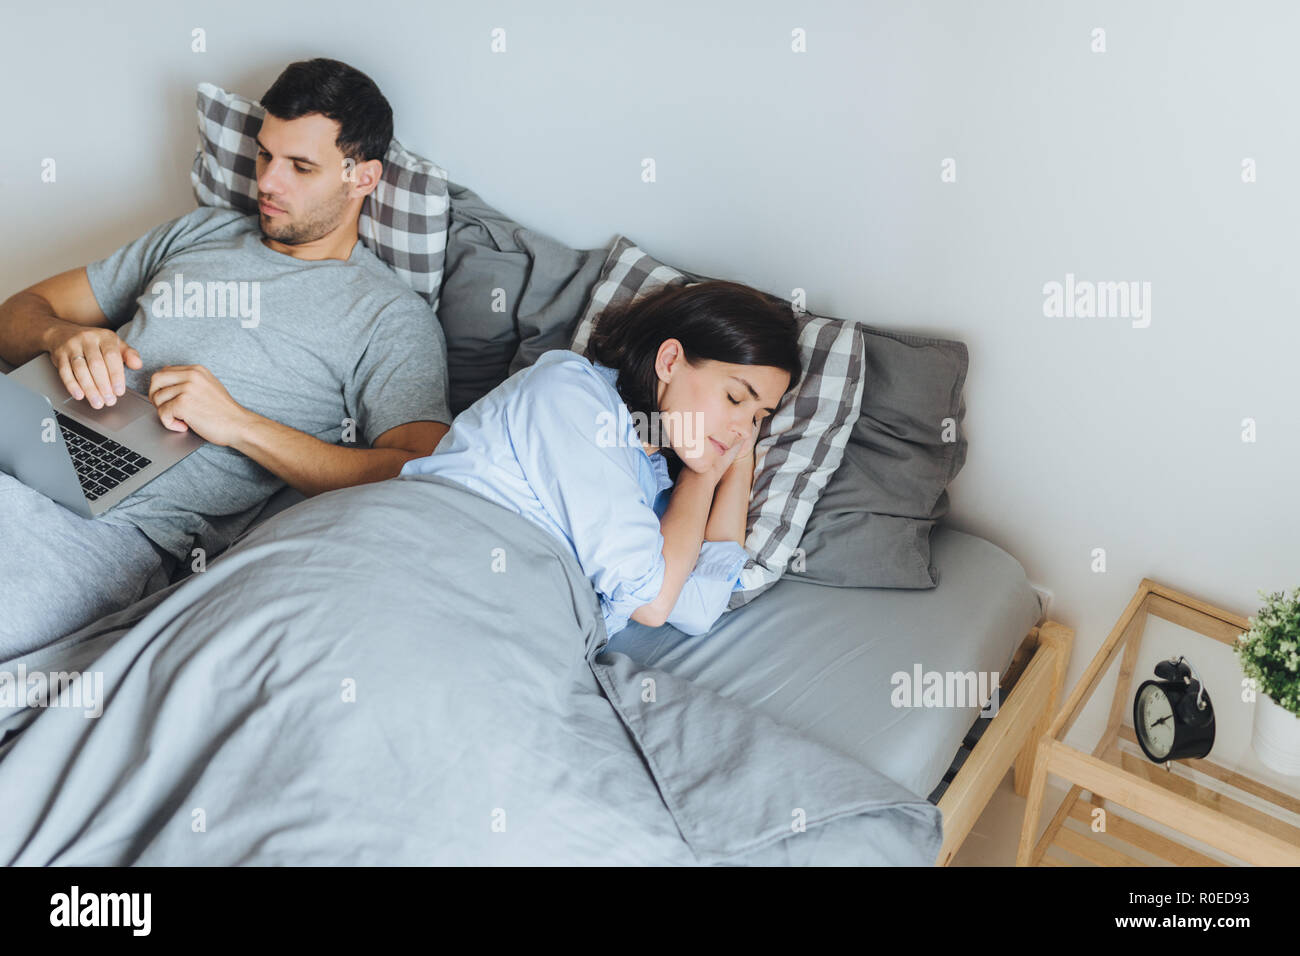 Hübsche Frau schläft im Bett, sieht angenehme Träume, während ihr Mann am Laptop arbeitet, der Bericht bereitet, versucht nicht seine Frau Schlaf zu unterbrechen. Stockfoto